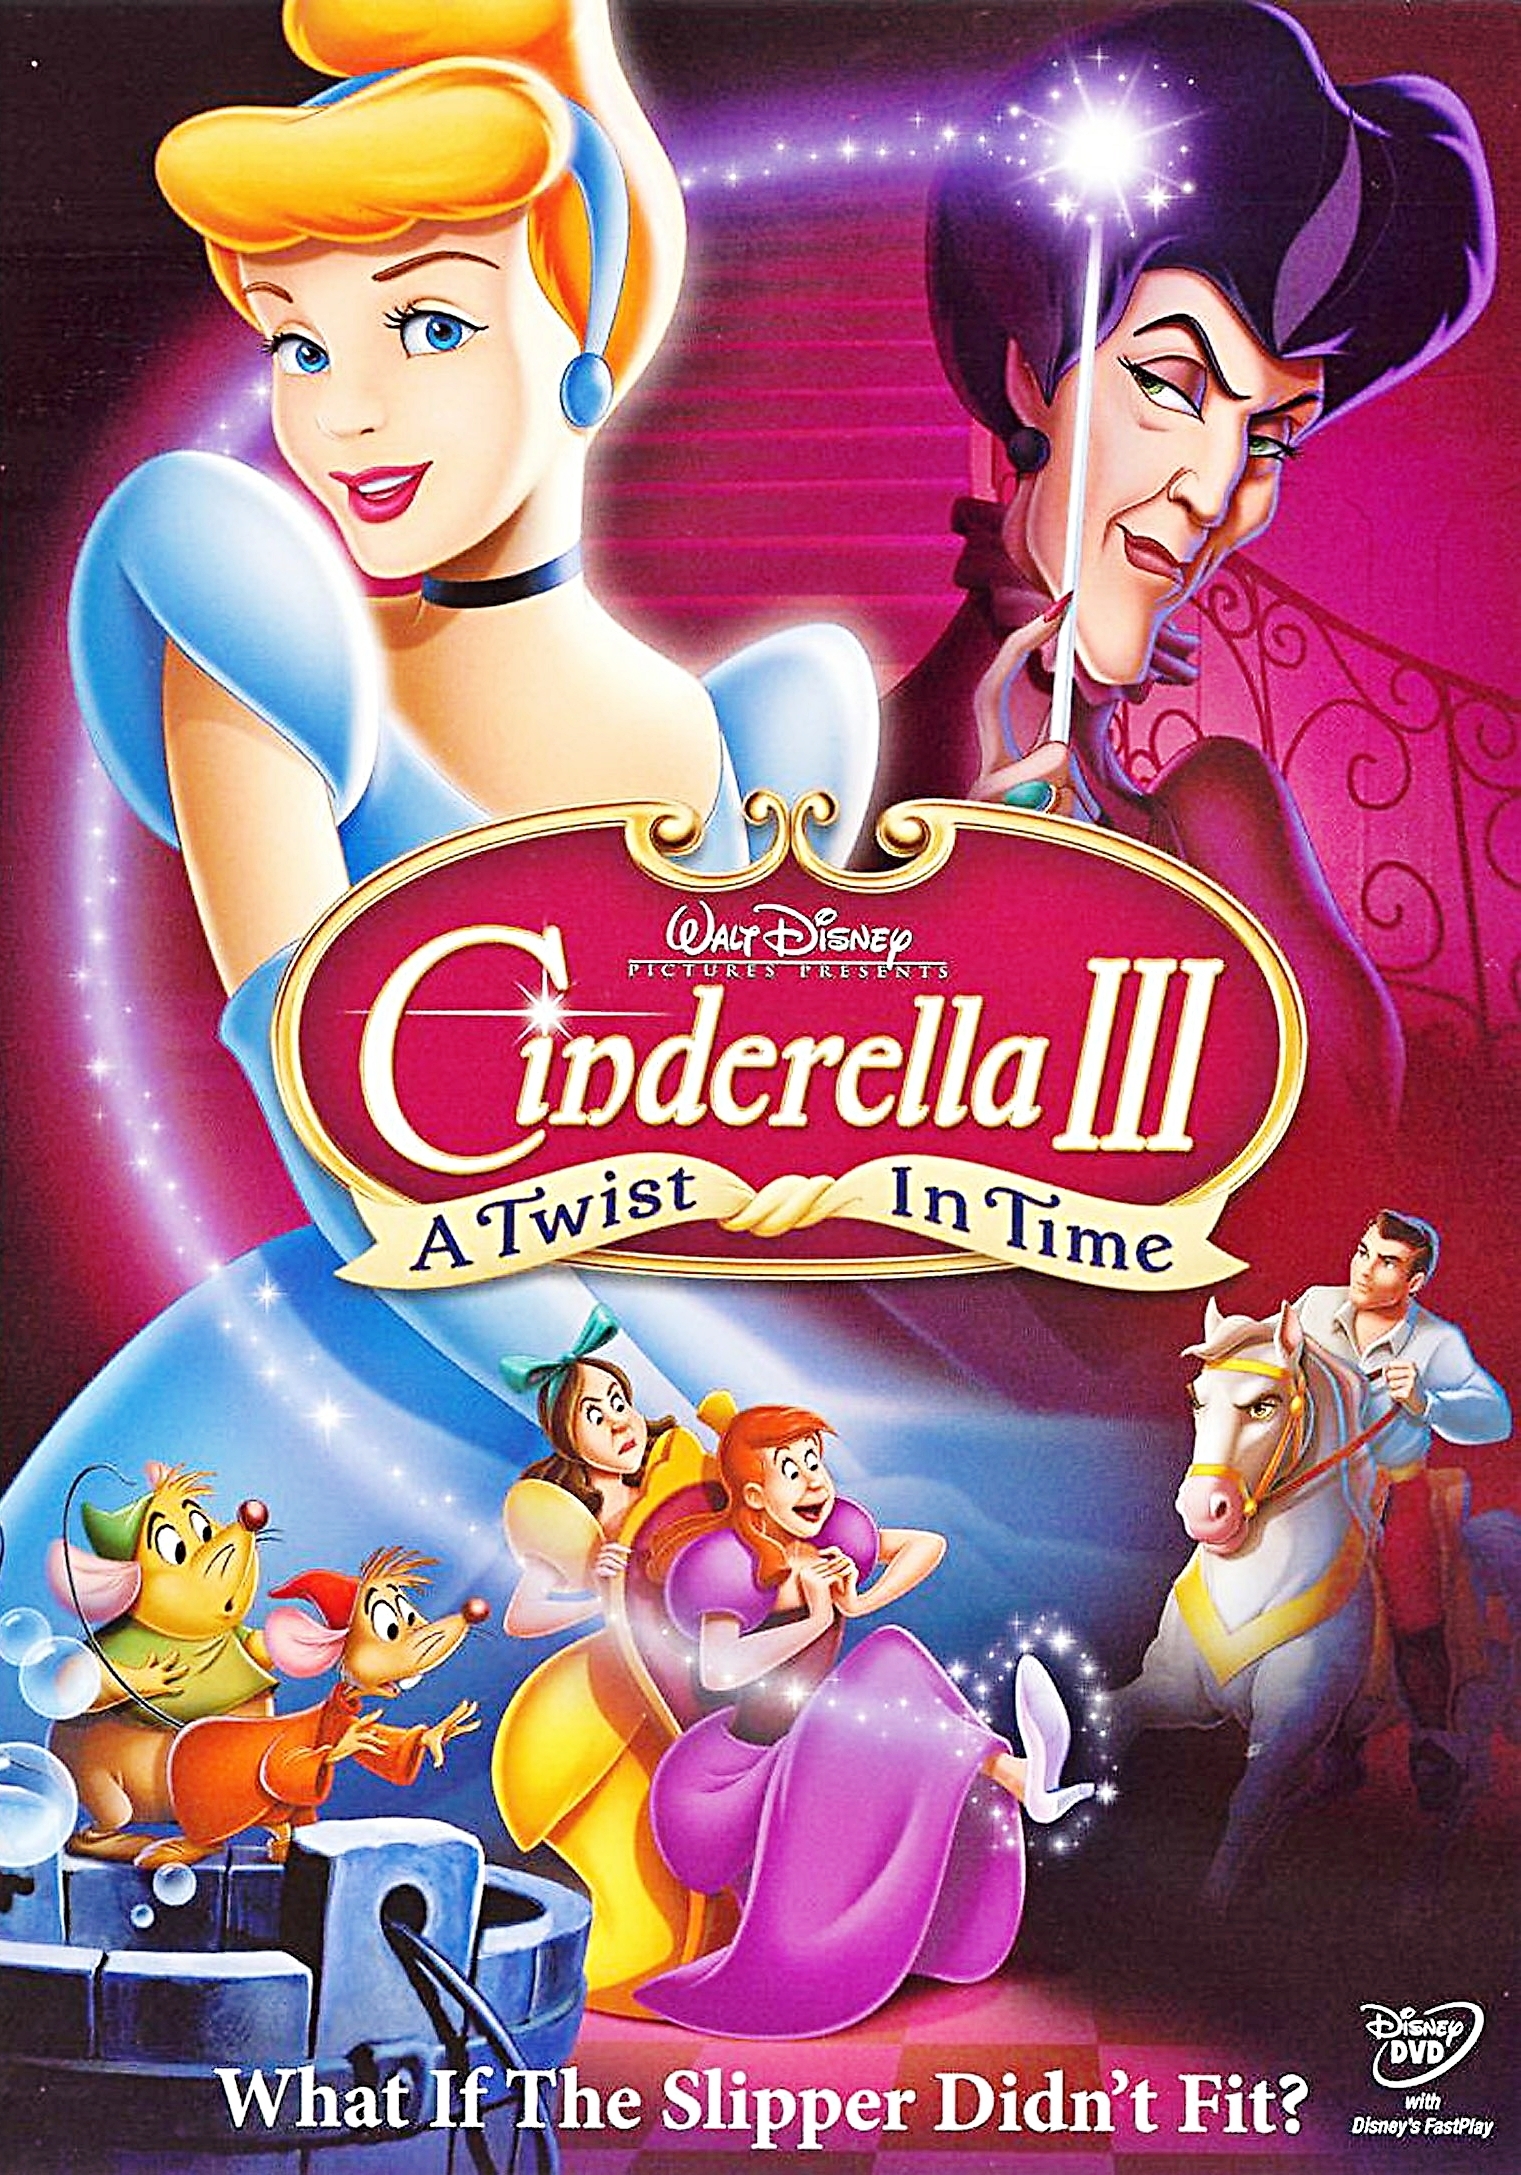 Cinderella 3   A Twist in Time DVD Cover   Walt Disney ...